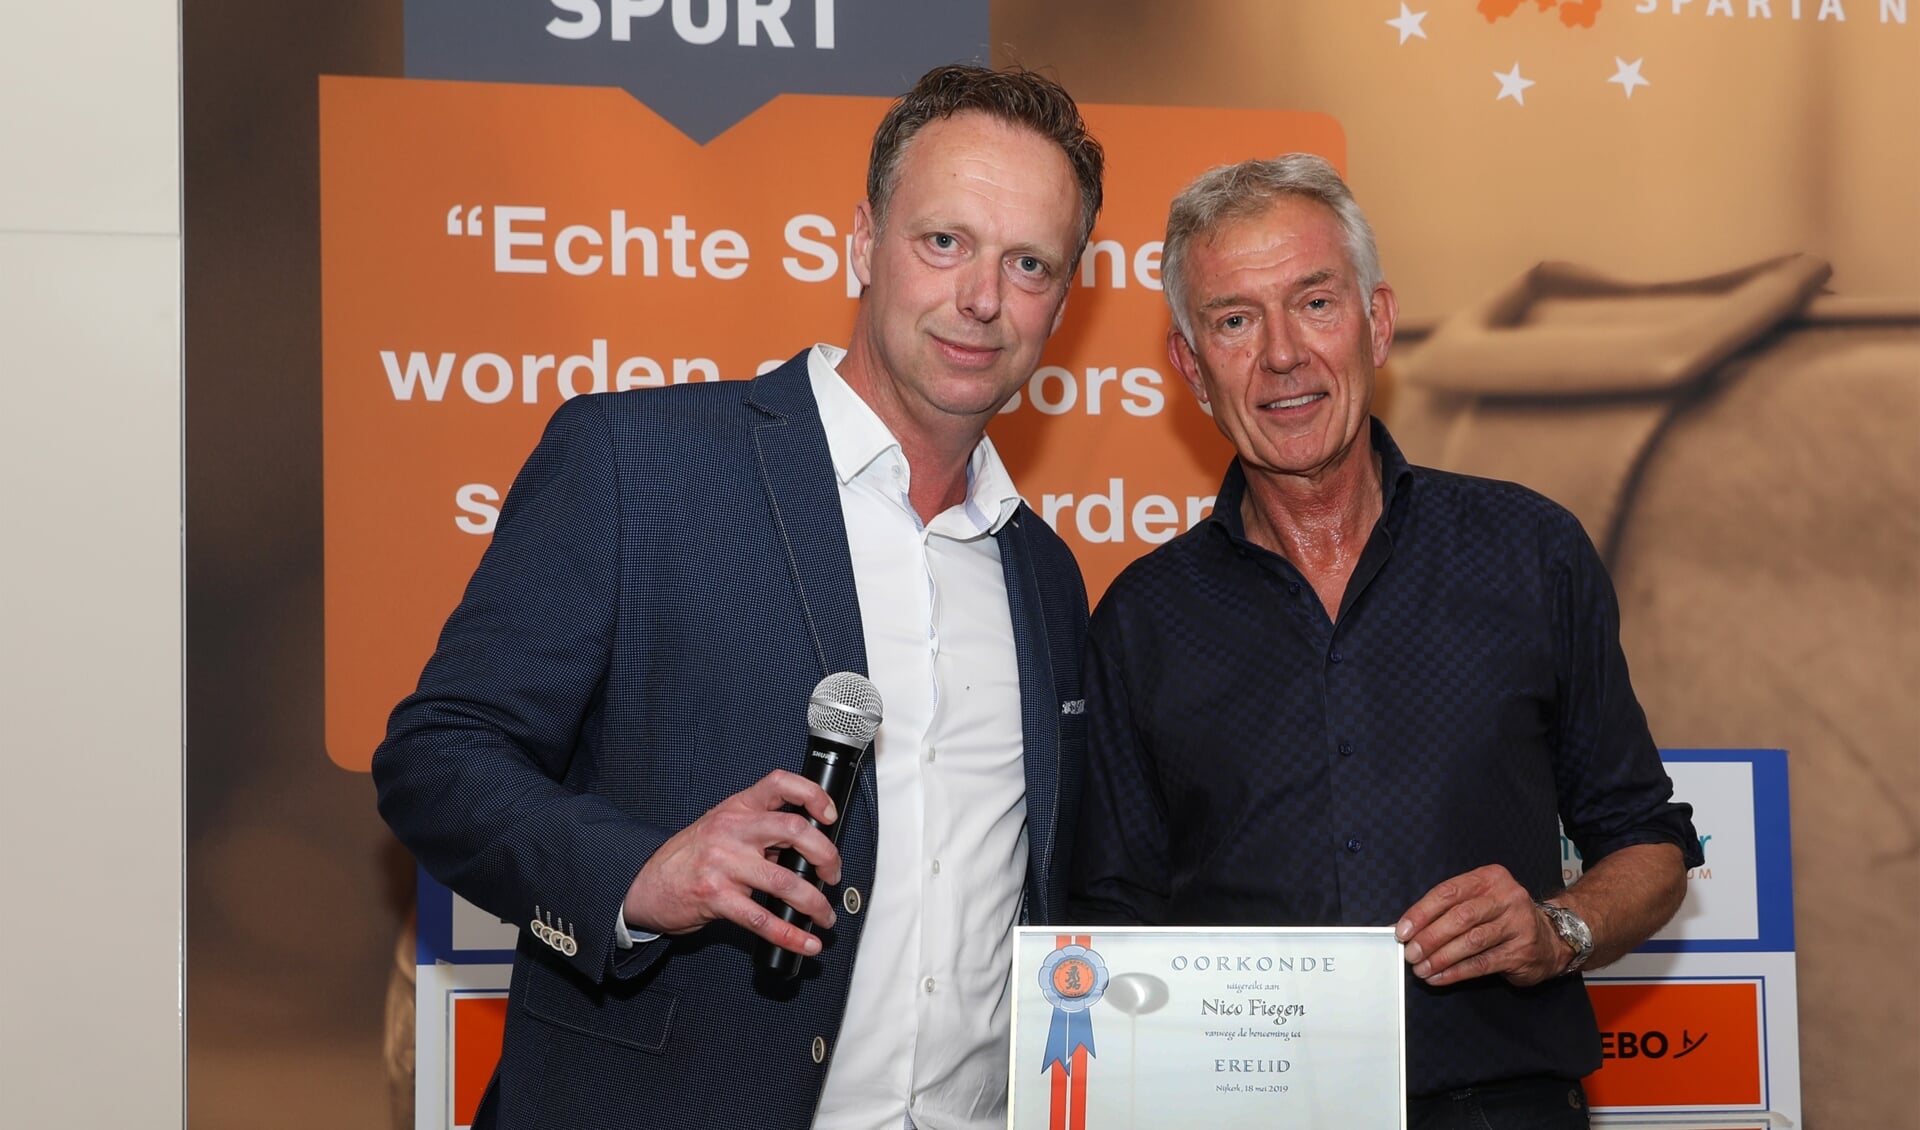 Namens de Businessclub Sparta Nijkerk overhandigt Dick van Rhee aan Nico Fiegen de erelid-oorkonde